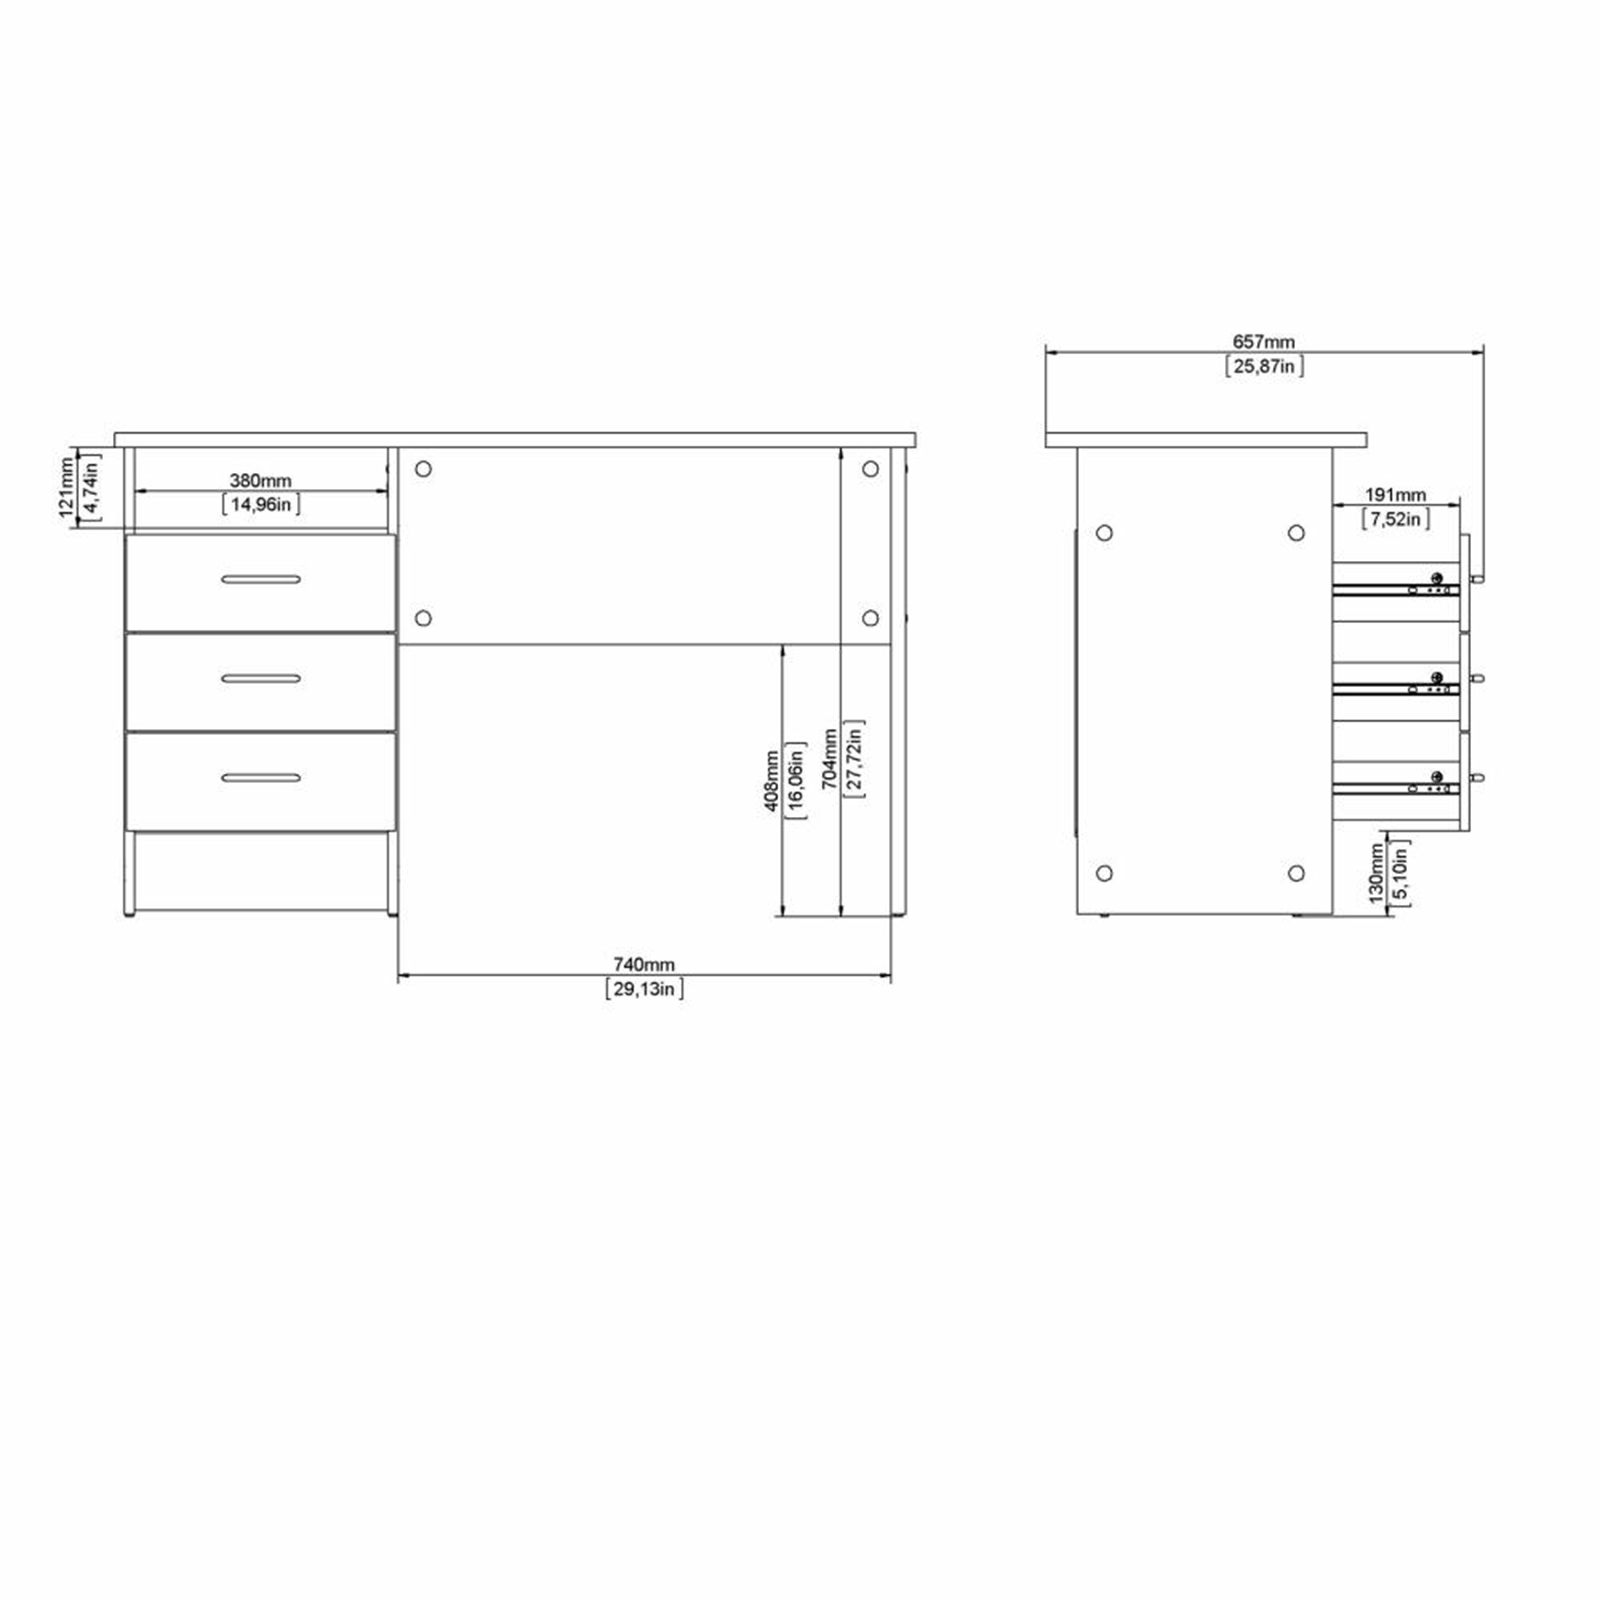 Bureau Function Plus avec commode 3 tiroirs en chêne et bois blanc 120x48 cm 73h